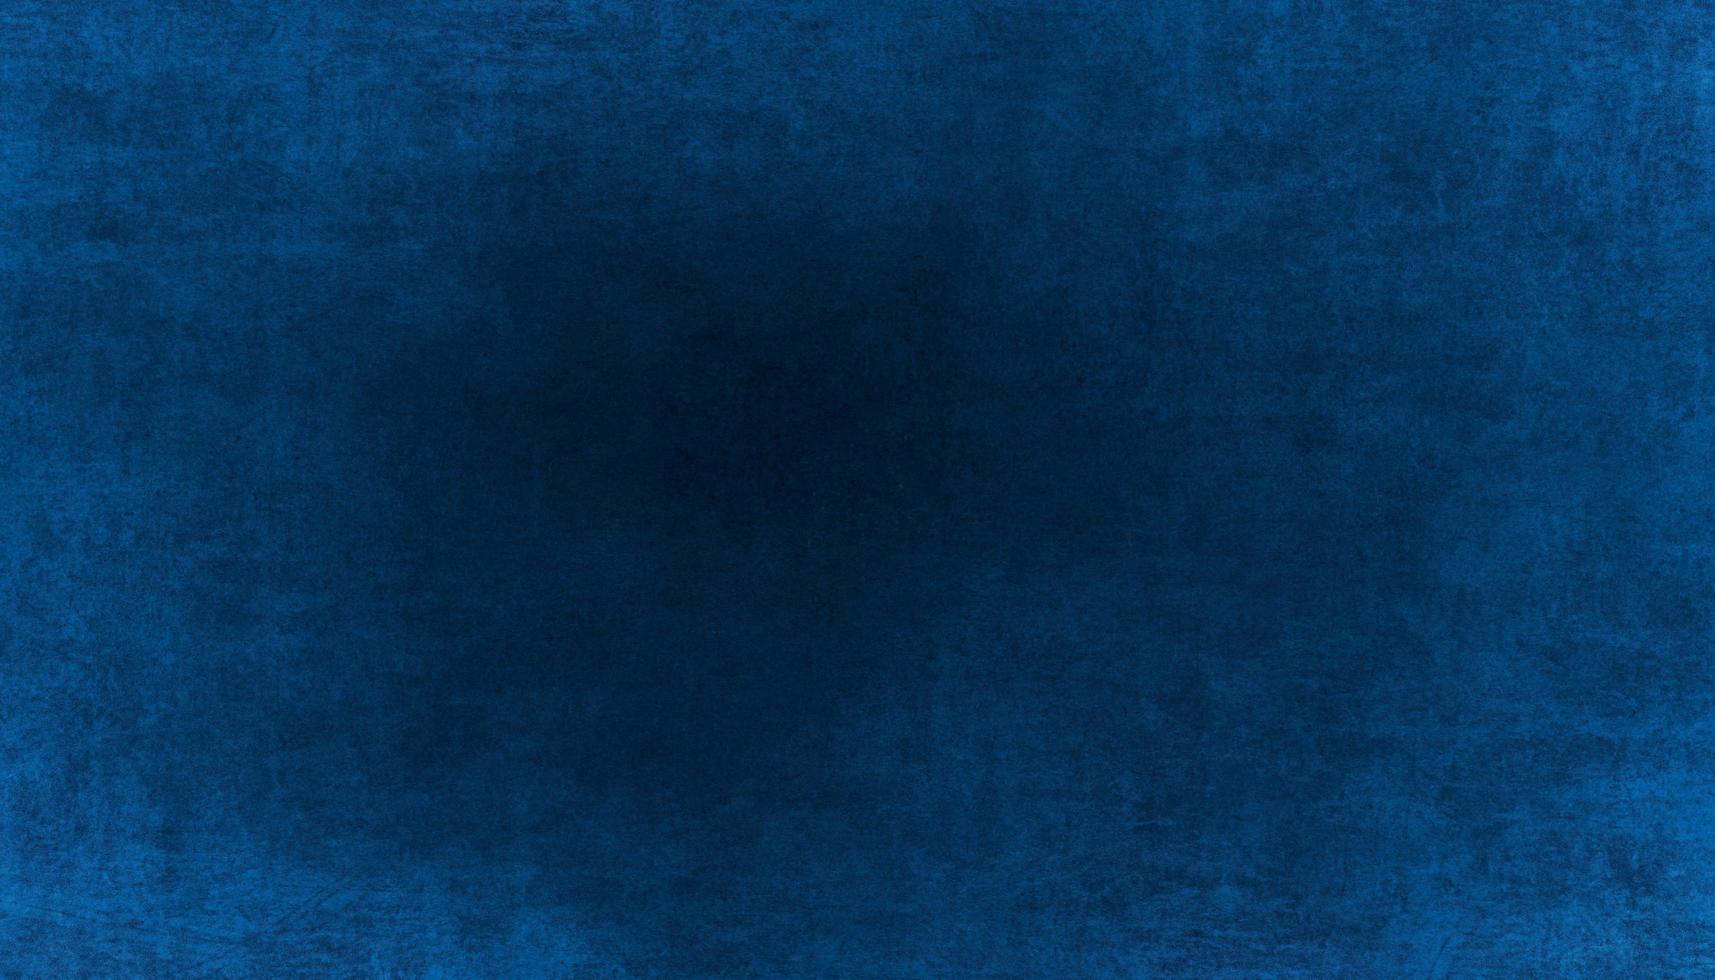 Thưởng thức bức tranh \'abstract dark navy blue painting\' đầy thu hút này. Sắc thái xanh đậm thể hiện sự trầm mặc và cùng với đó là nét đúc kết nghệ thuật tuyệt vời.